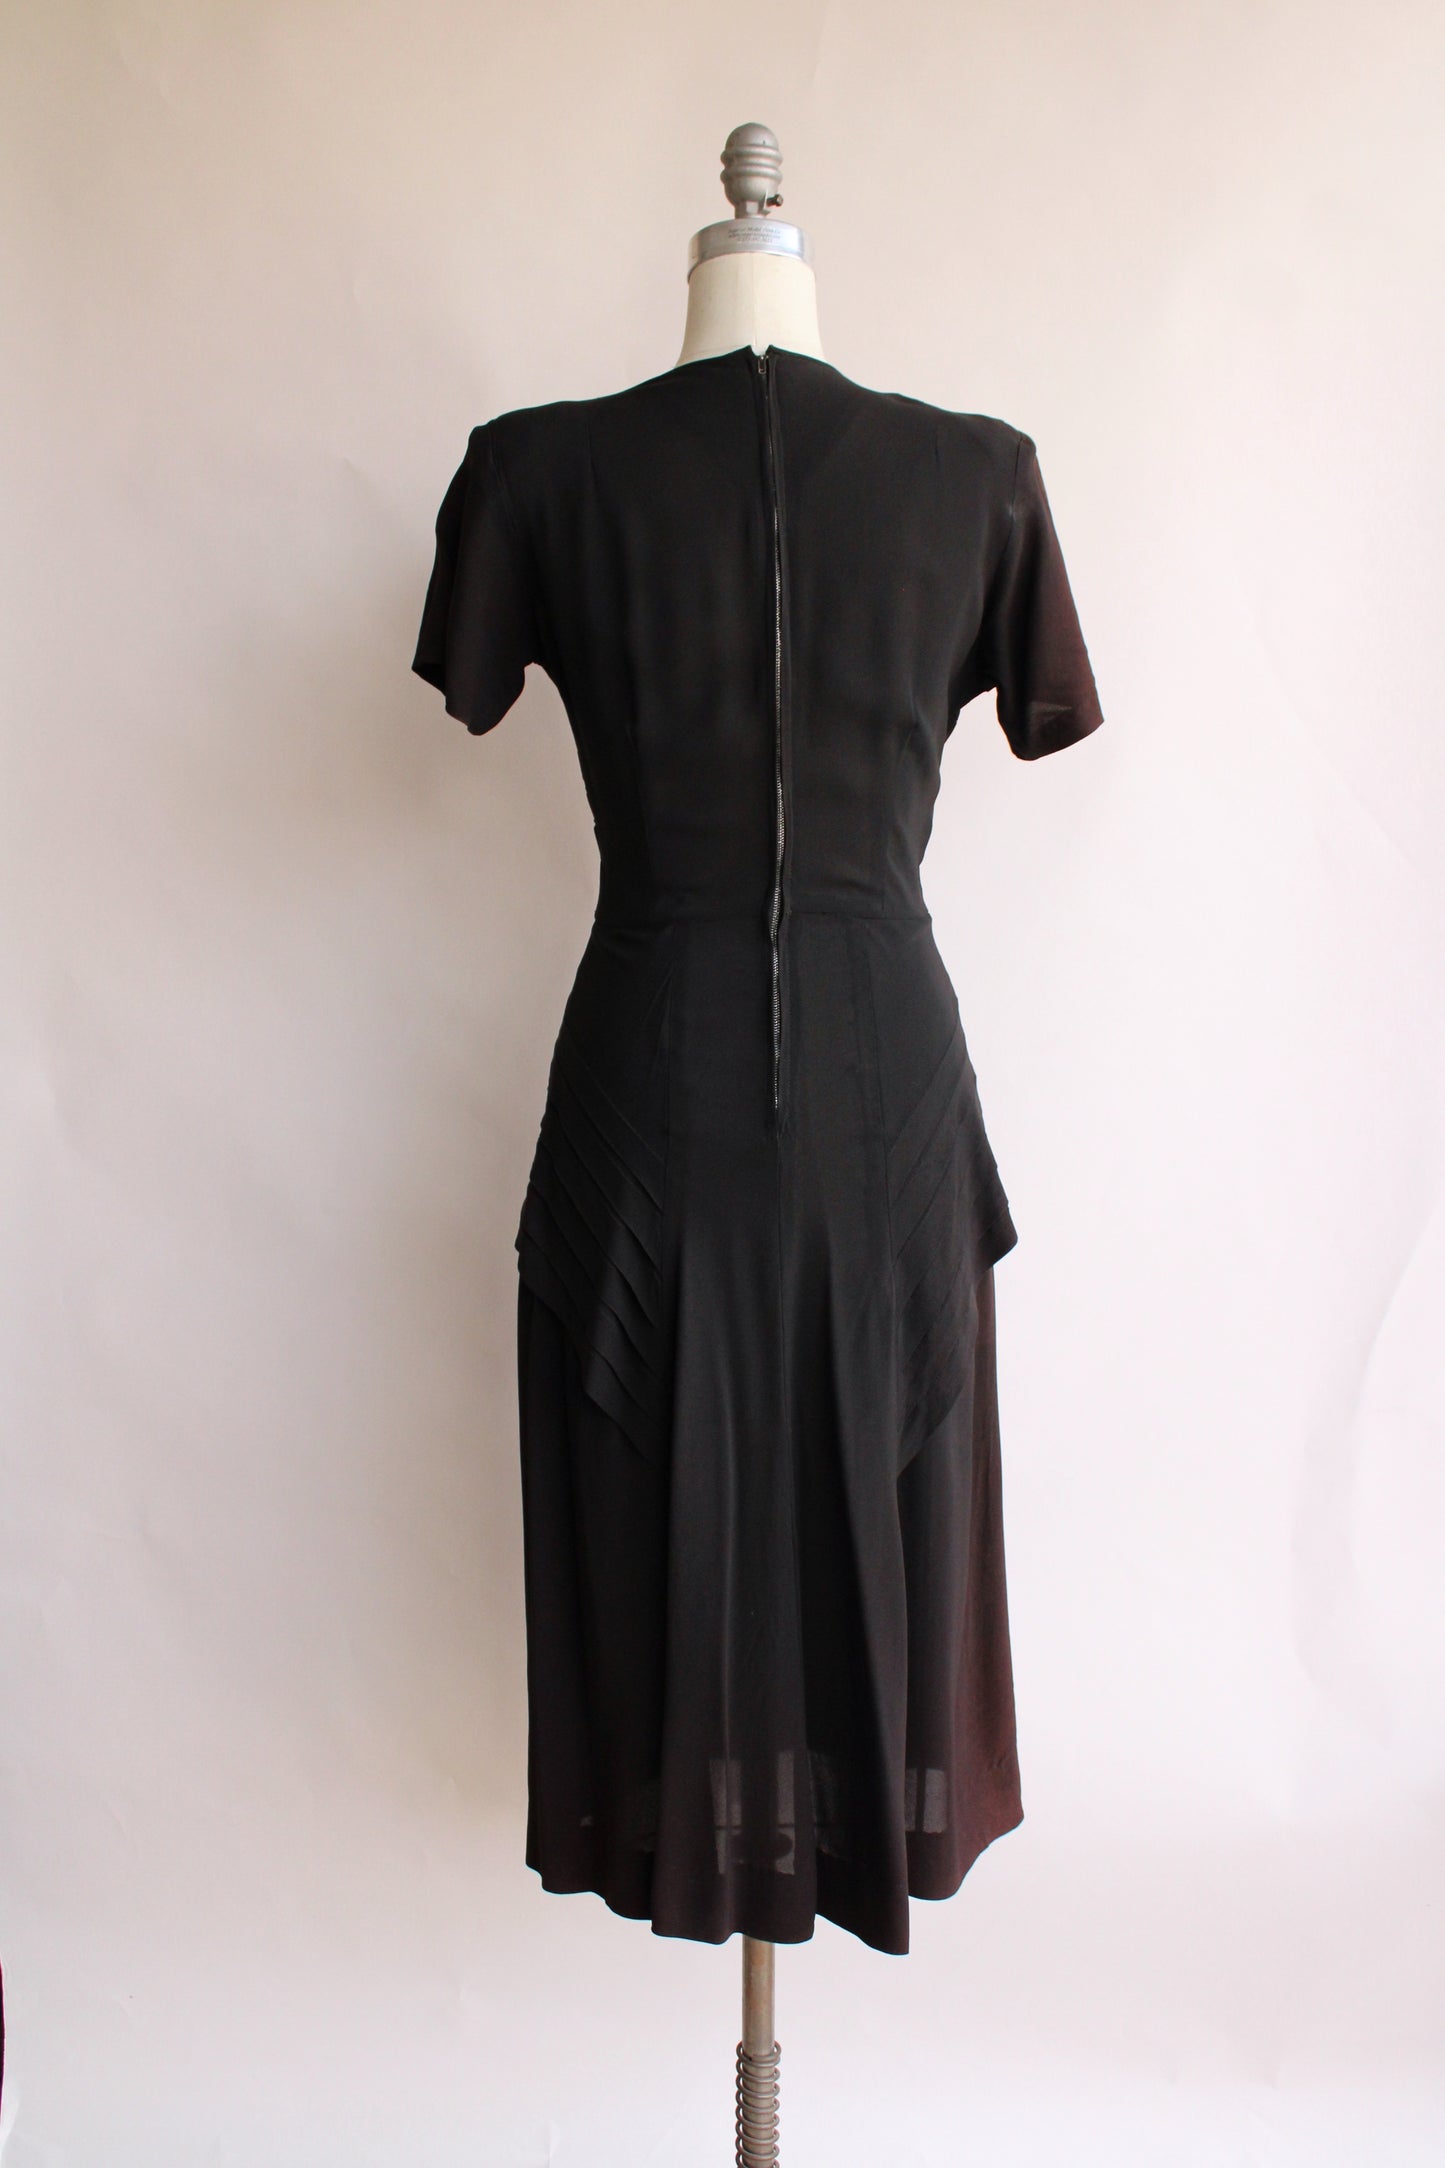 Vintage 1940s Dress with Soutache Trim